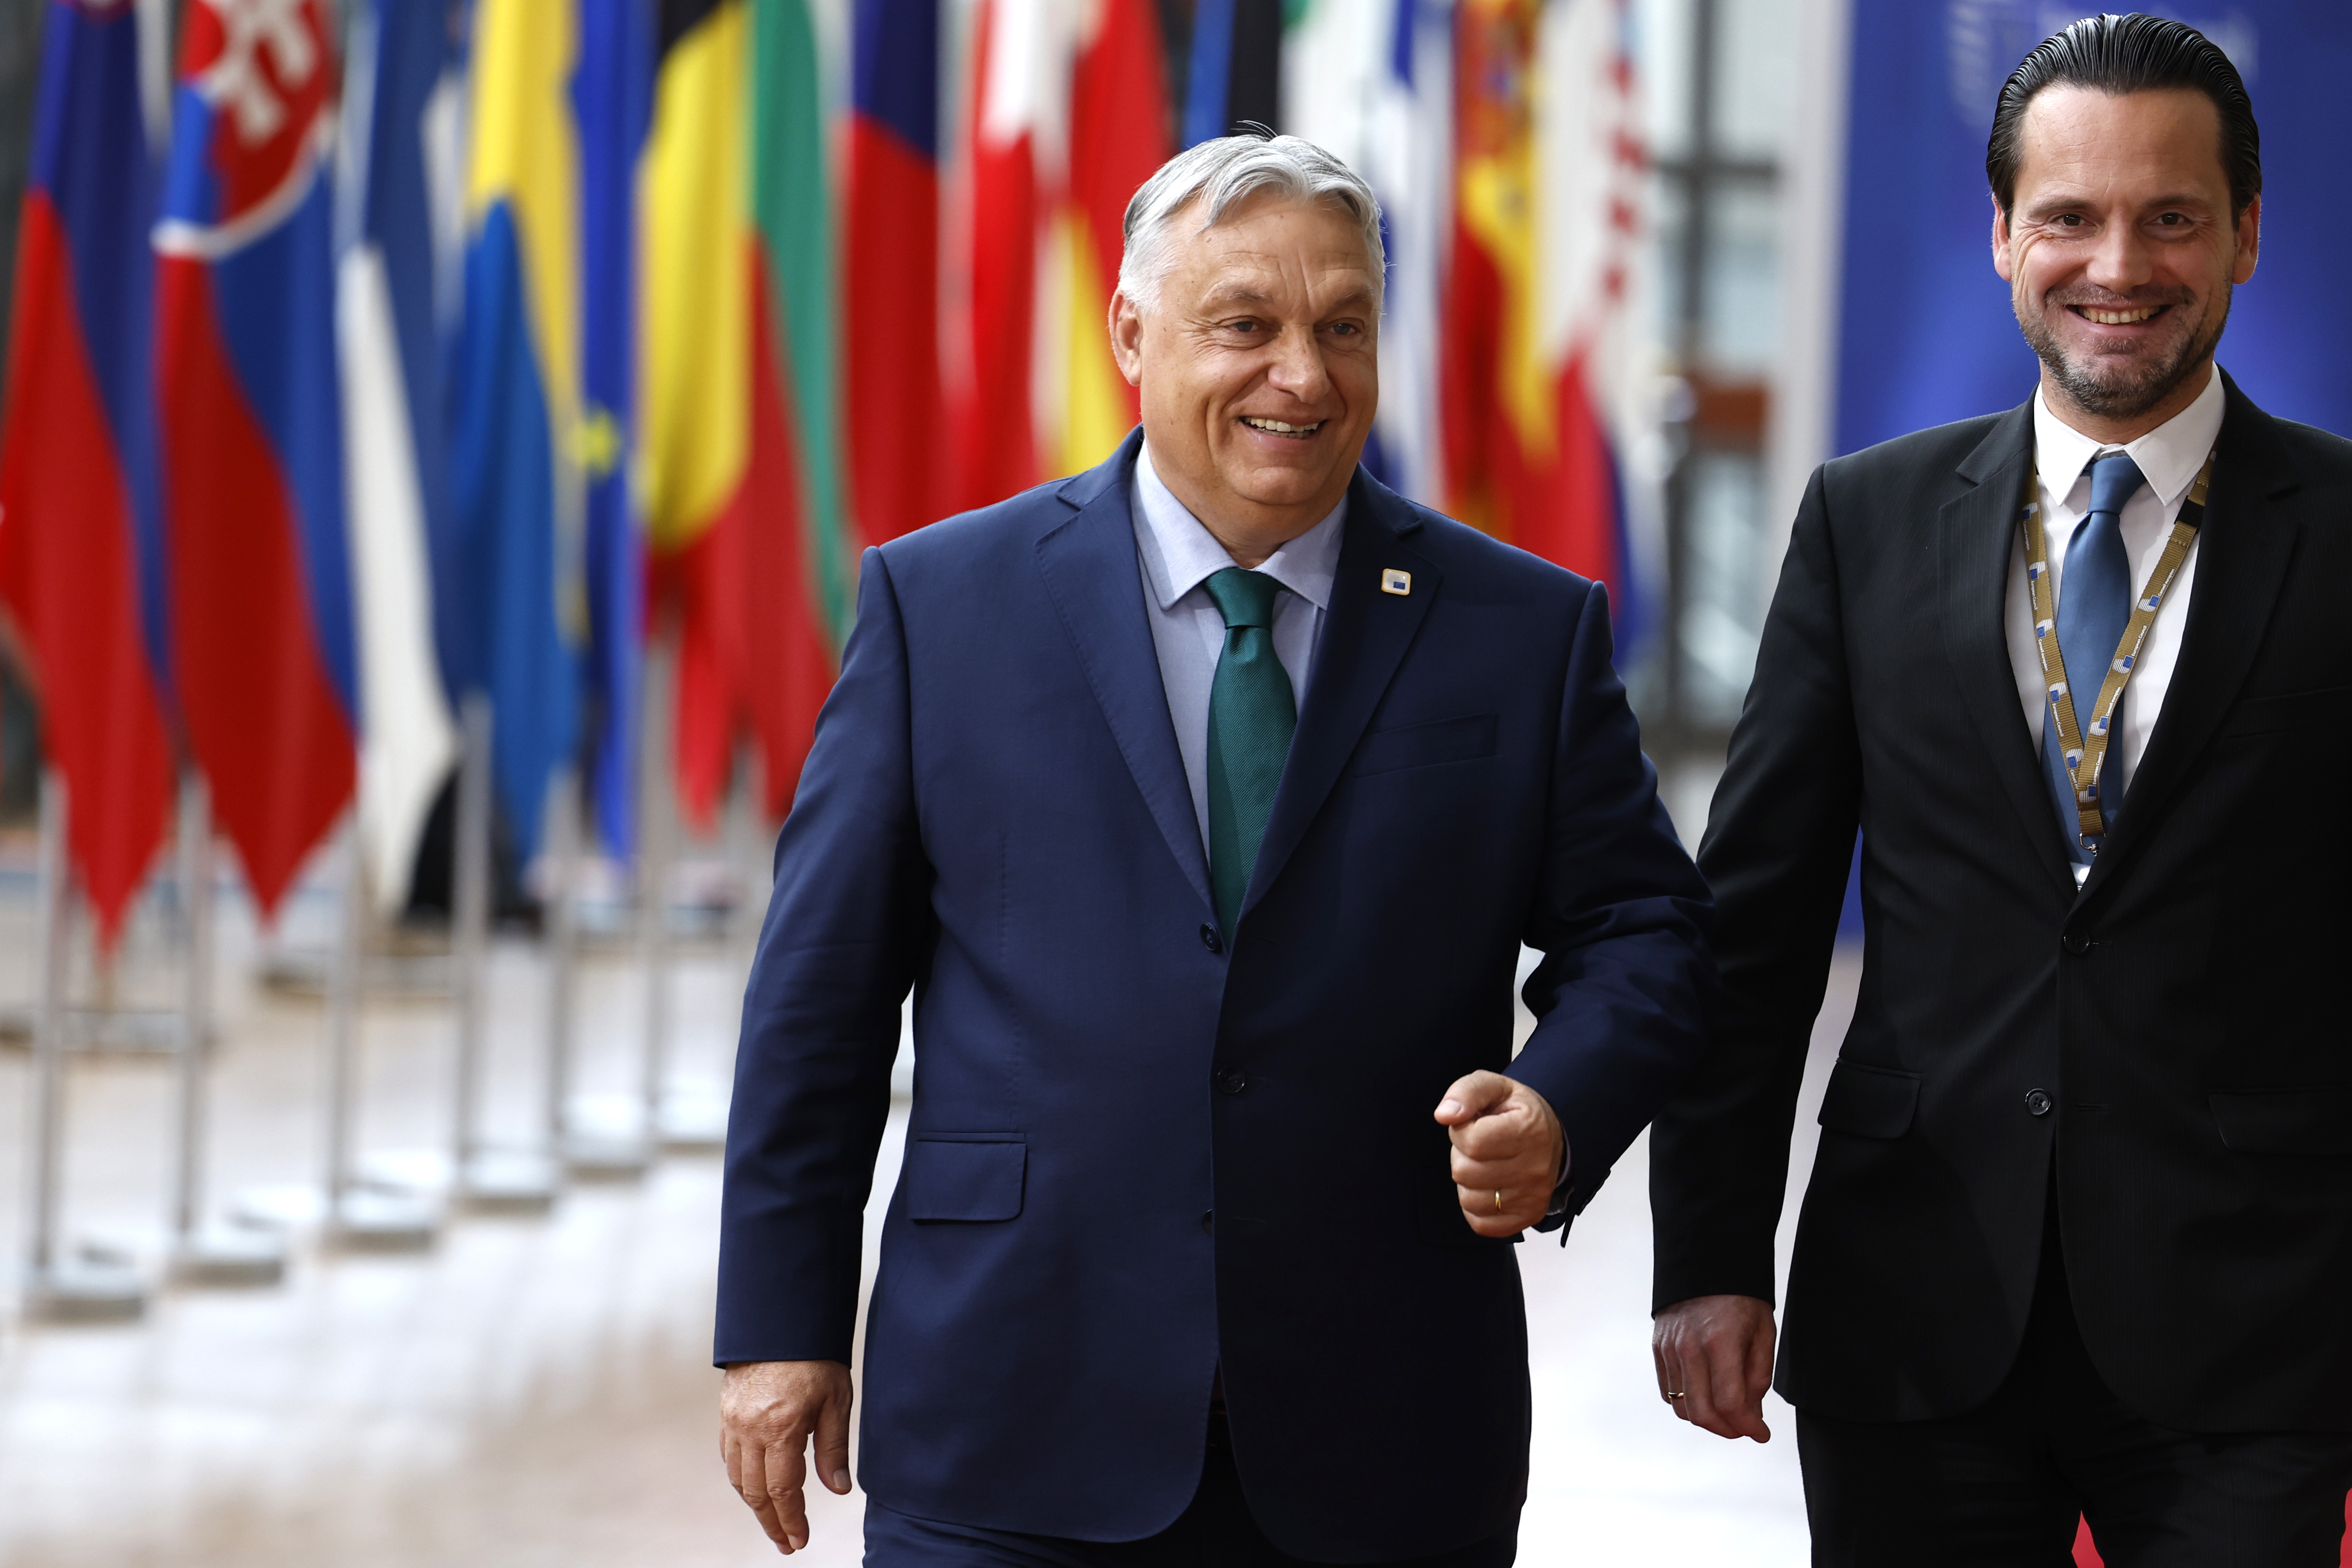 Für die kommenden sechs Monate übernimmt Ungarn den Ratsvorsitz in der Europäischen Union. Der ungarische Ministerpräsident Orban ist für seine EU-kritische Haltung bekannt.